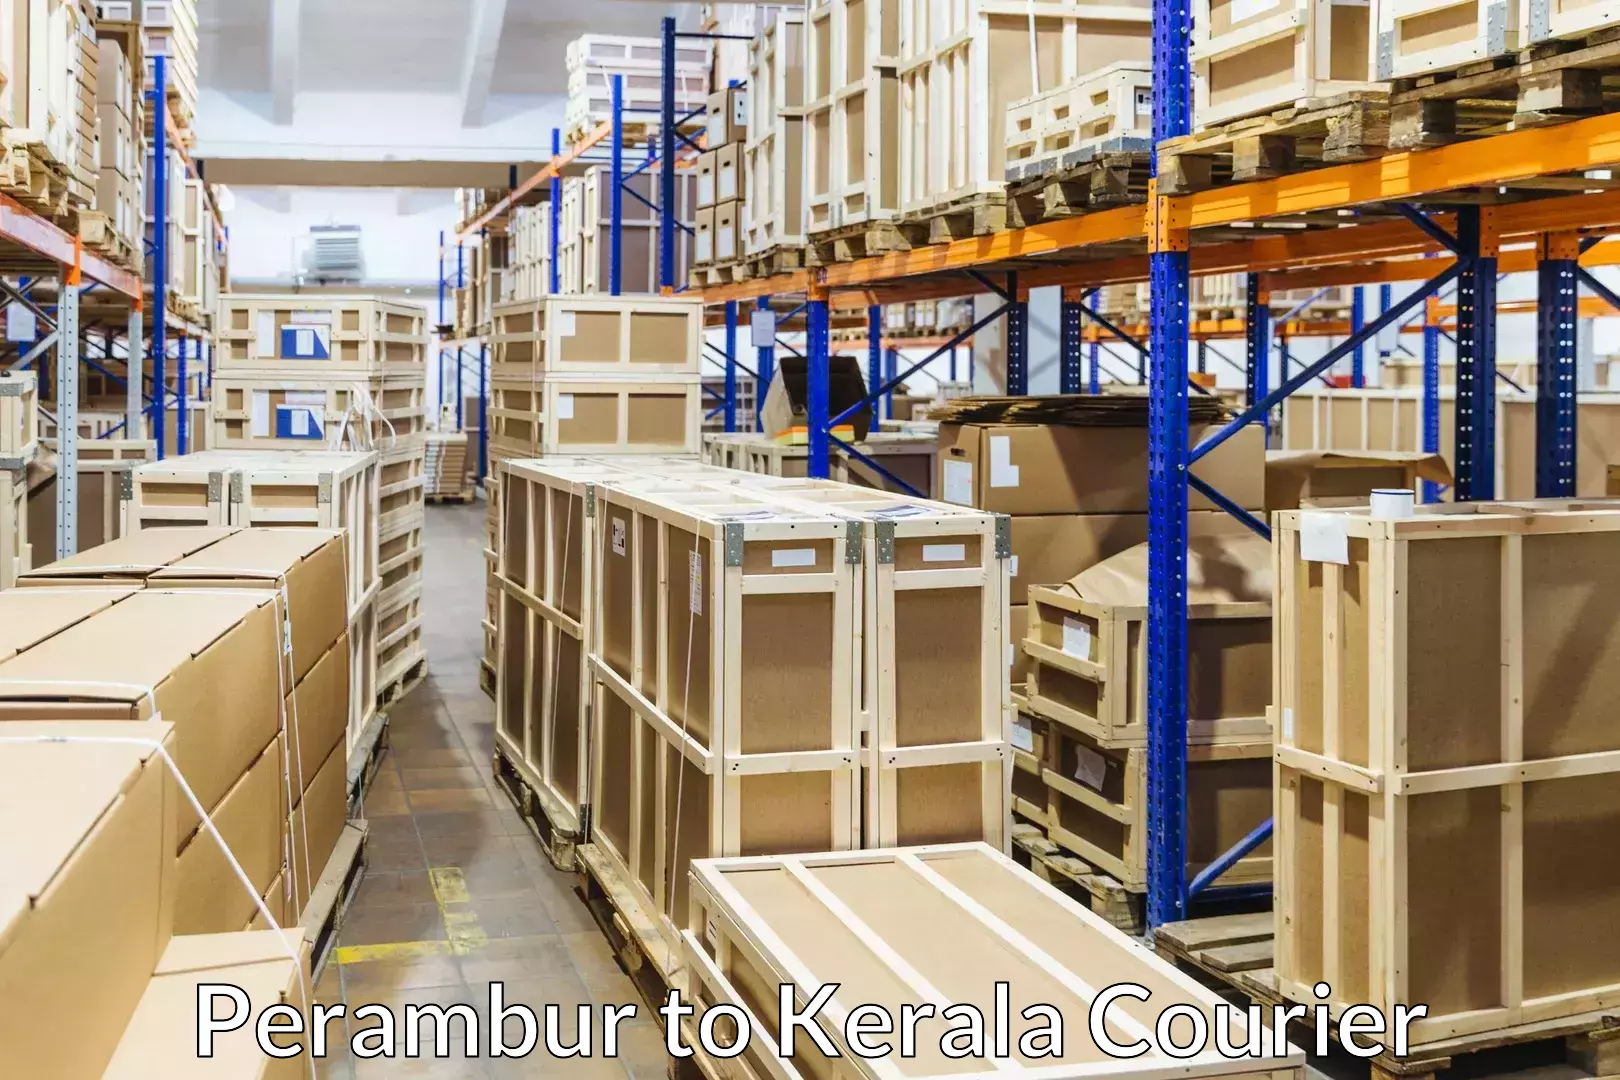 Premium moving services Perambur to Kerala